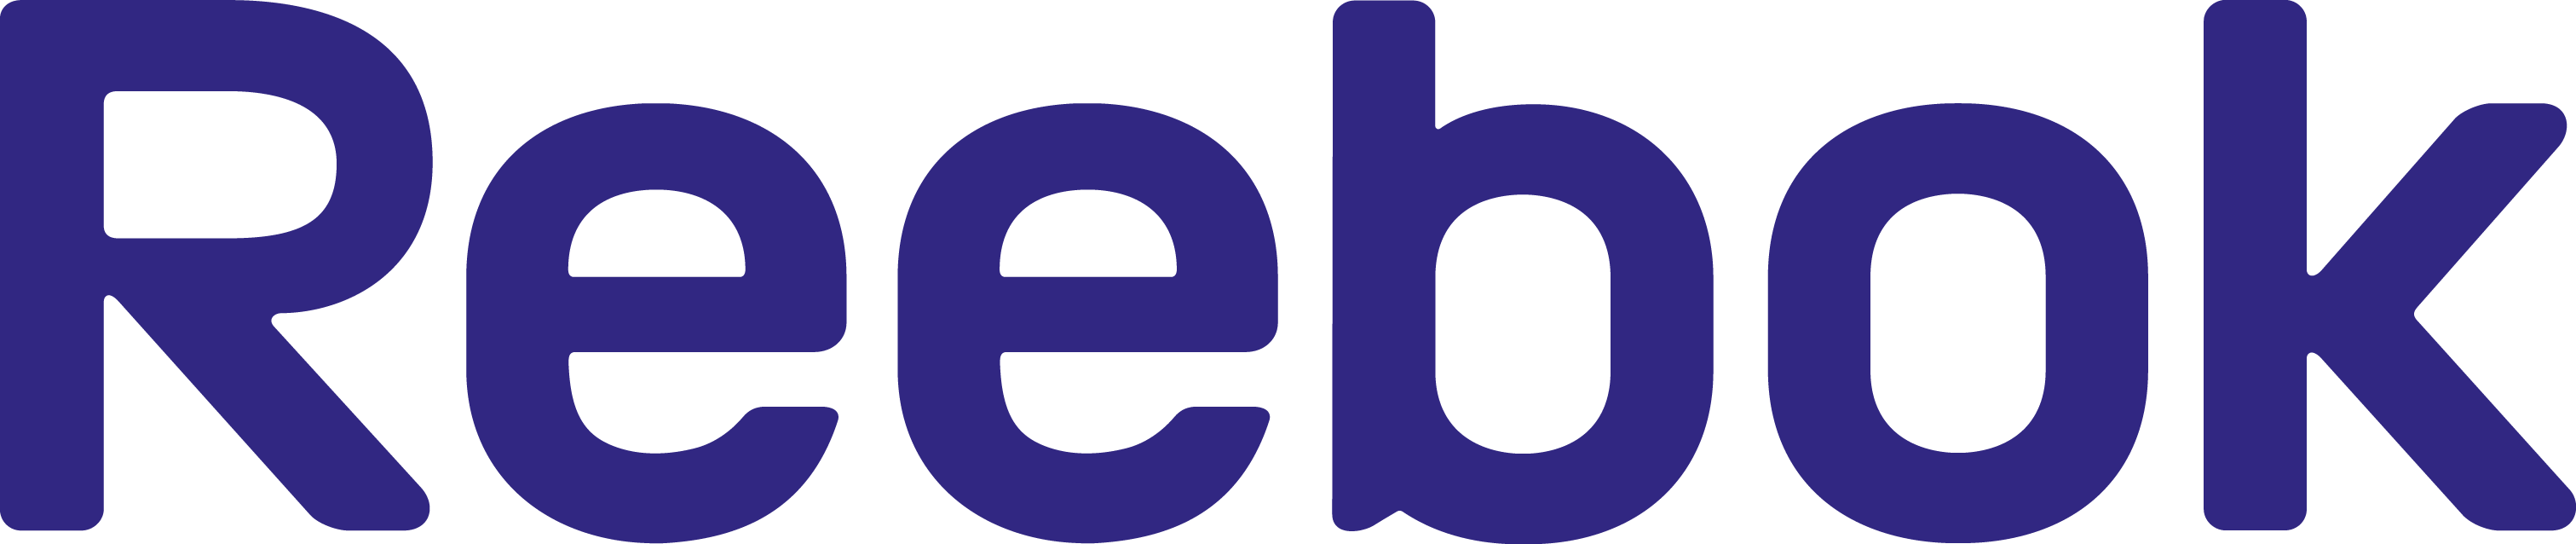 Reebok Logo Transparent Background PNG Image